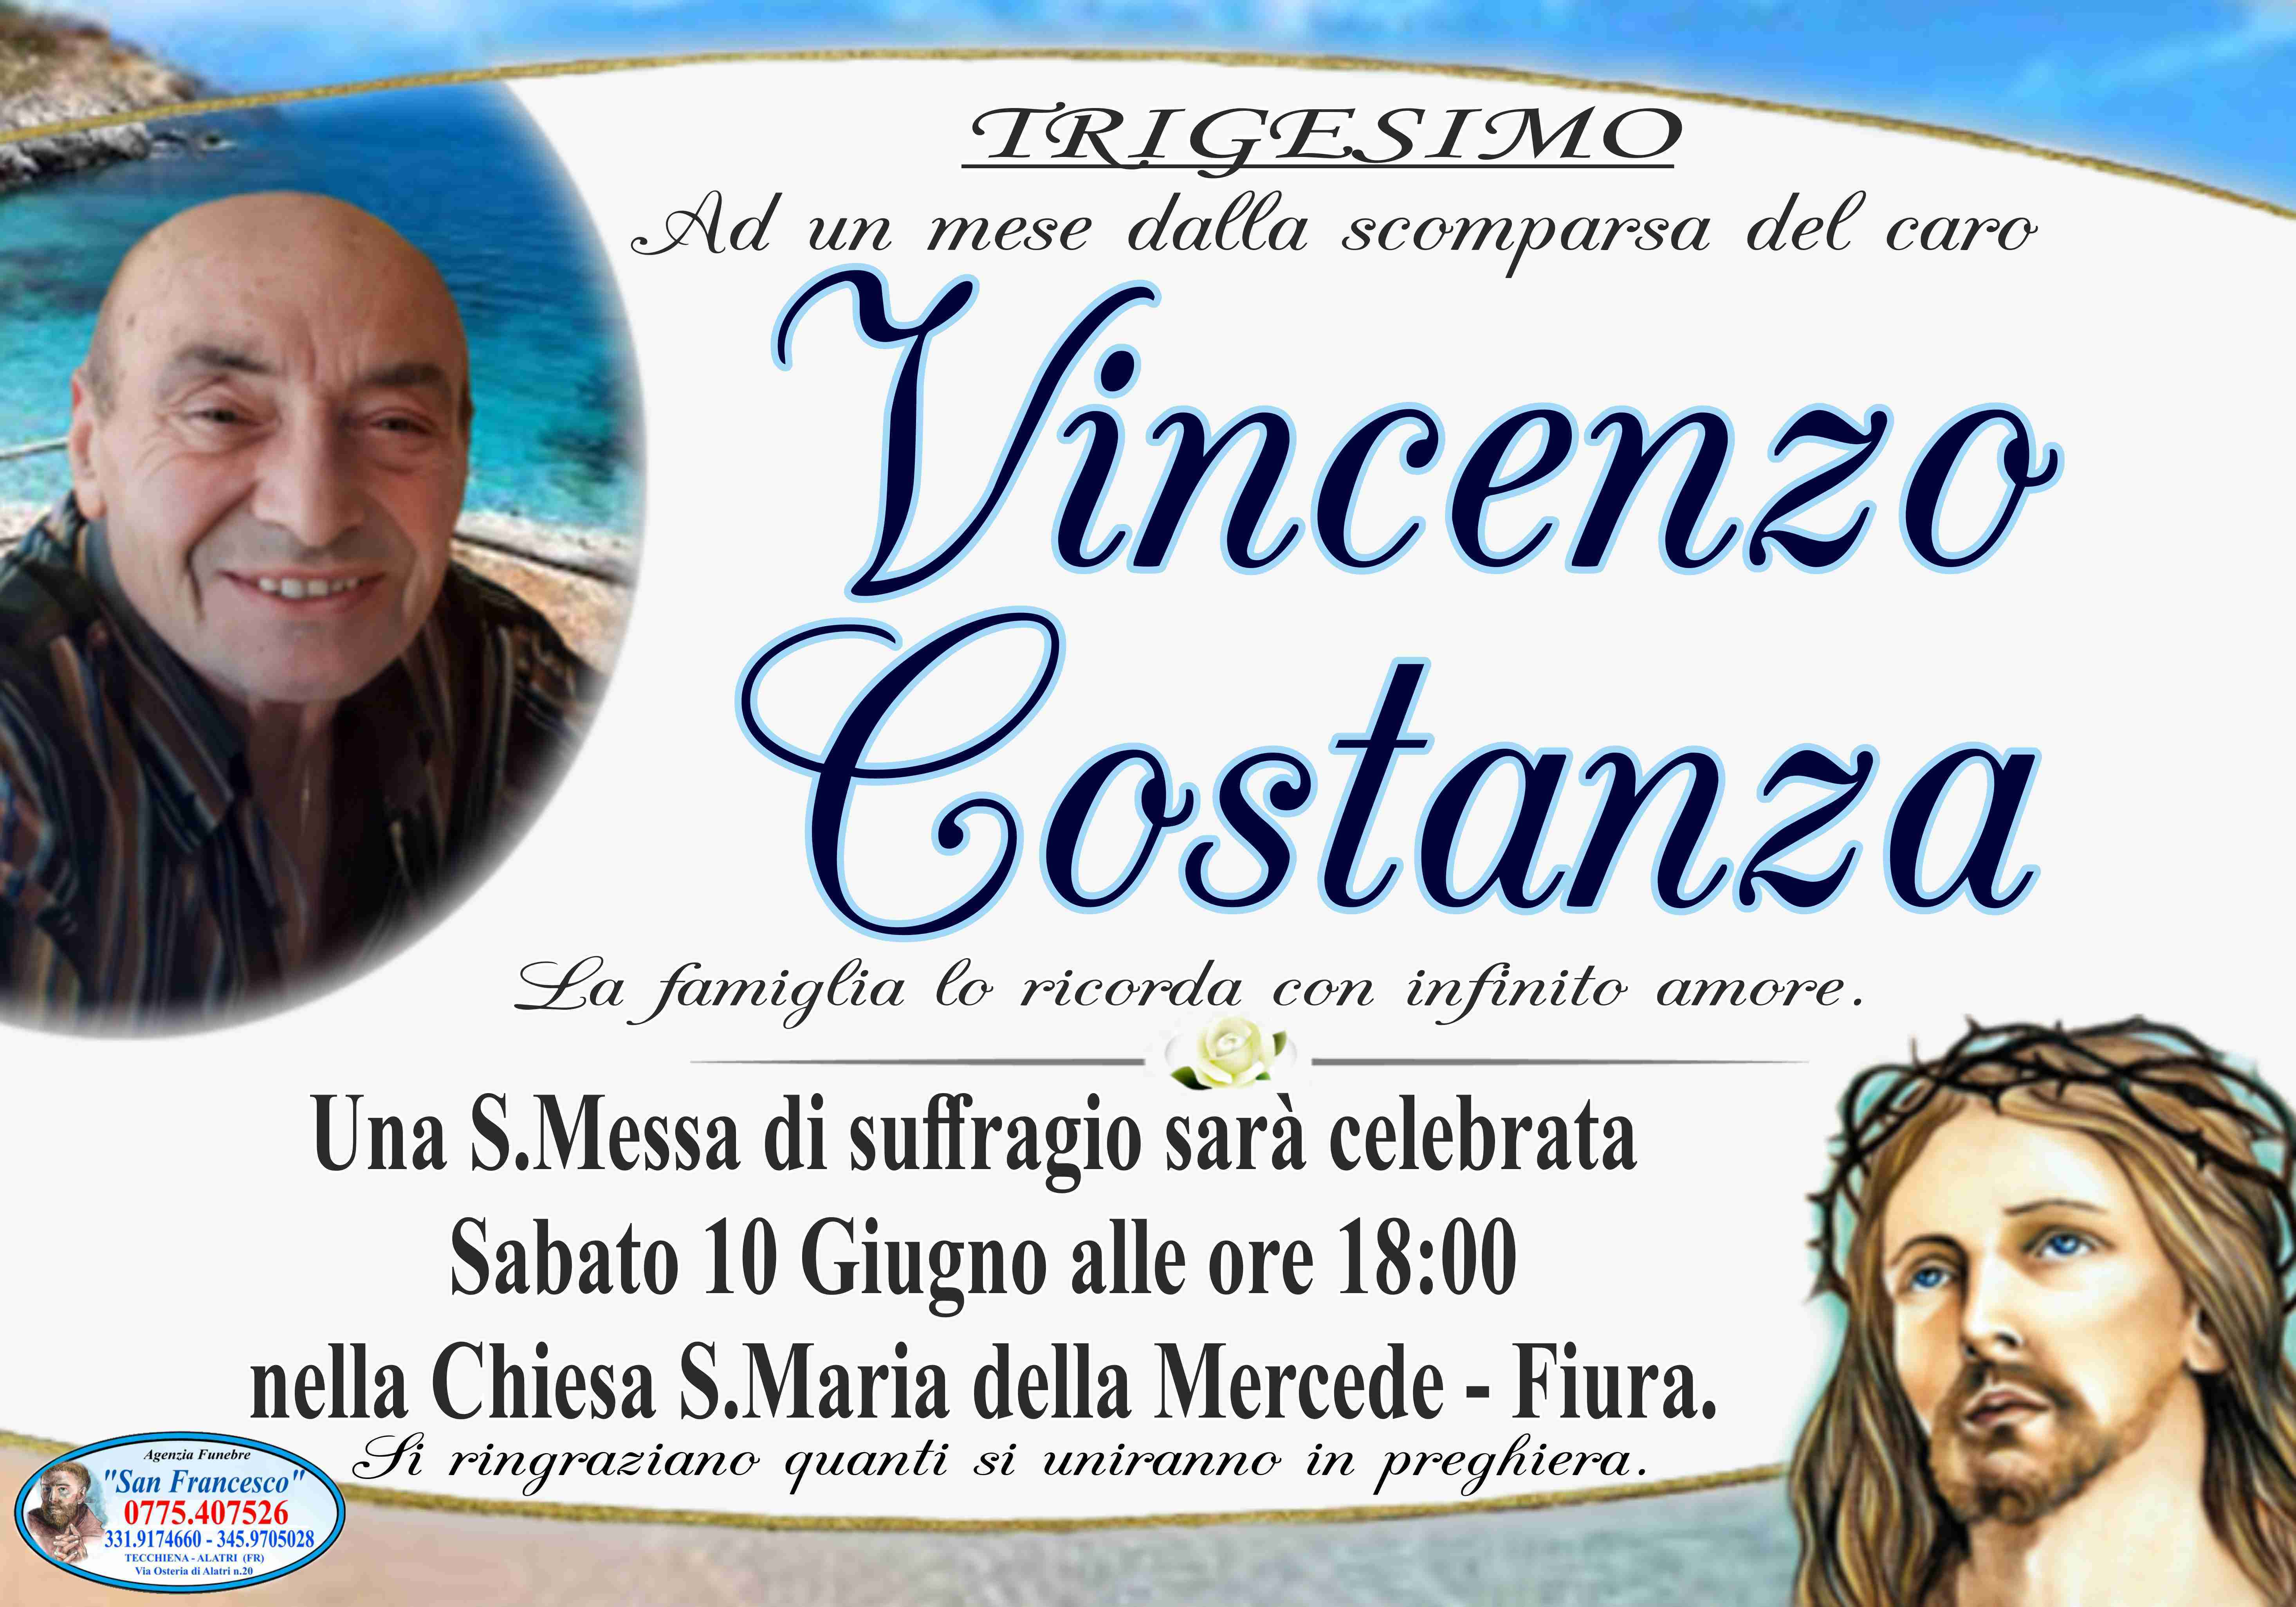 Vincenzo Costanza